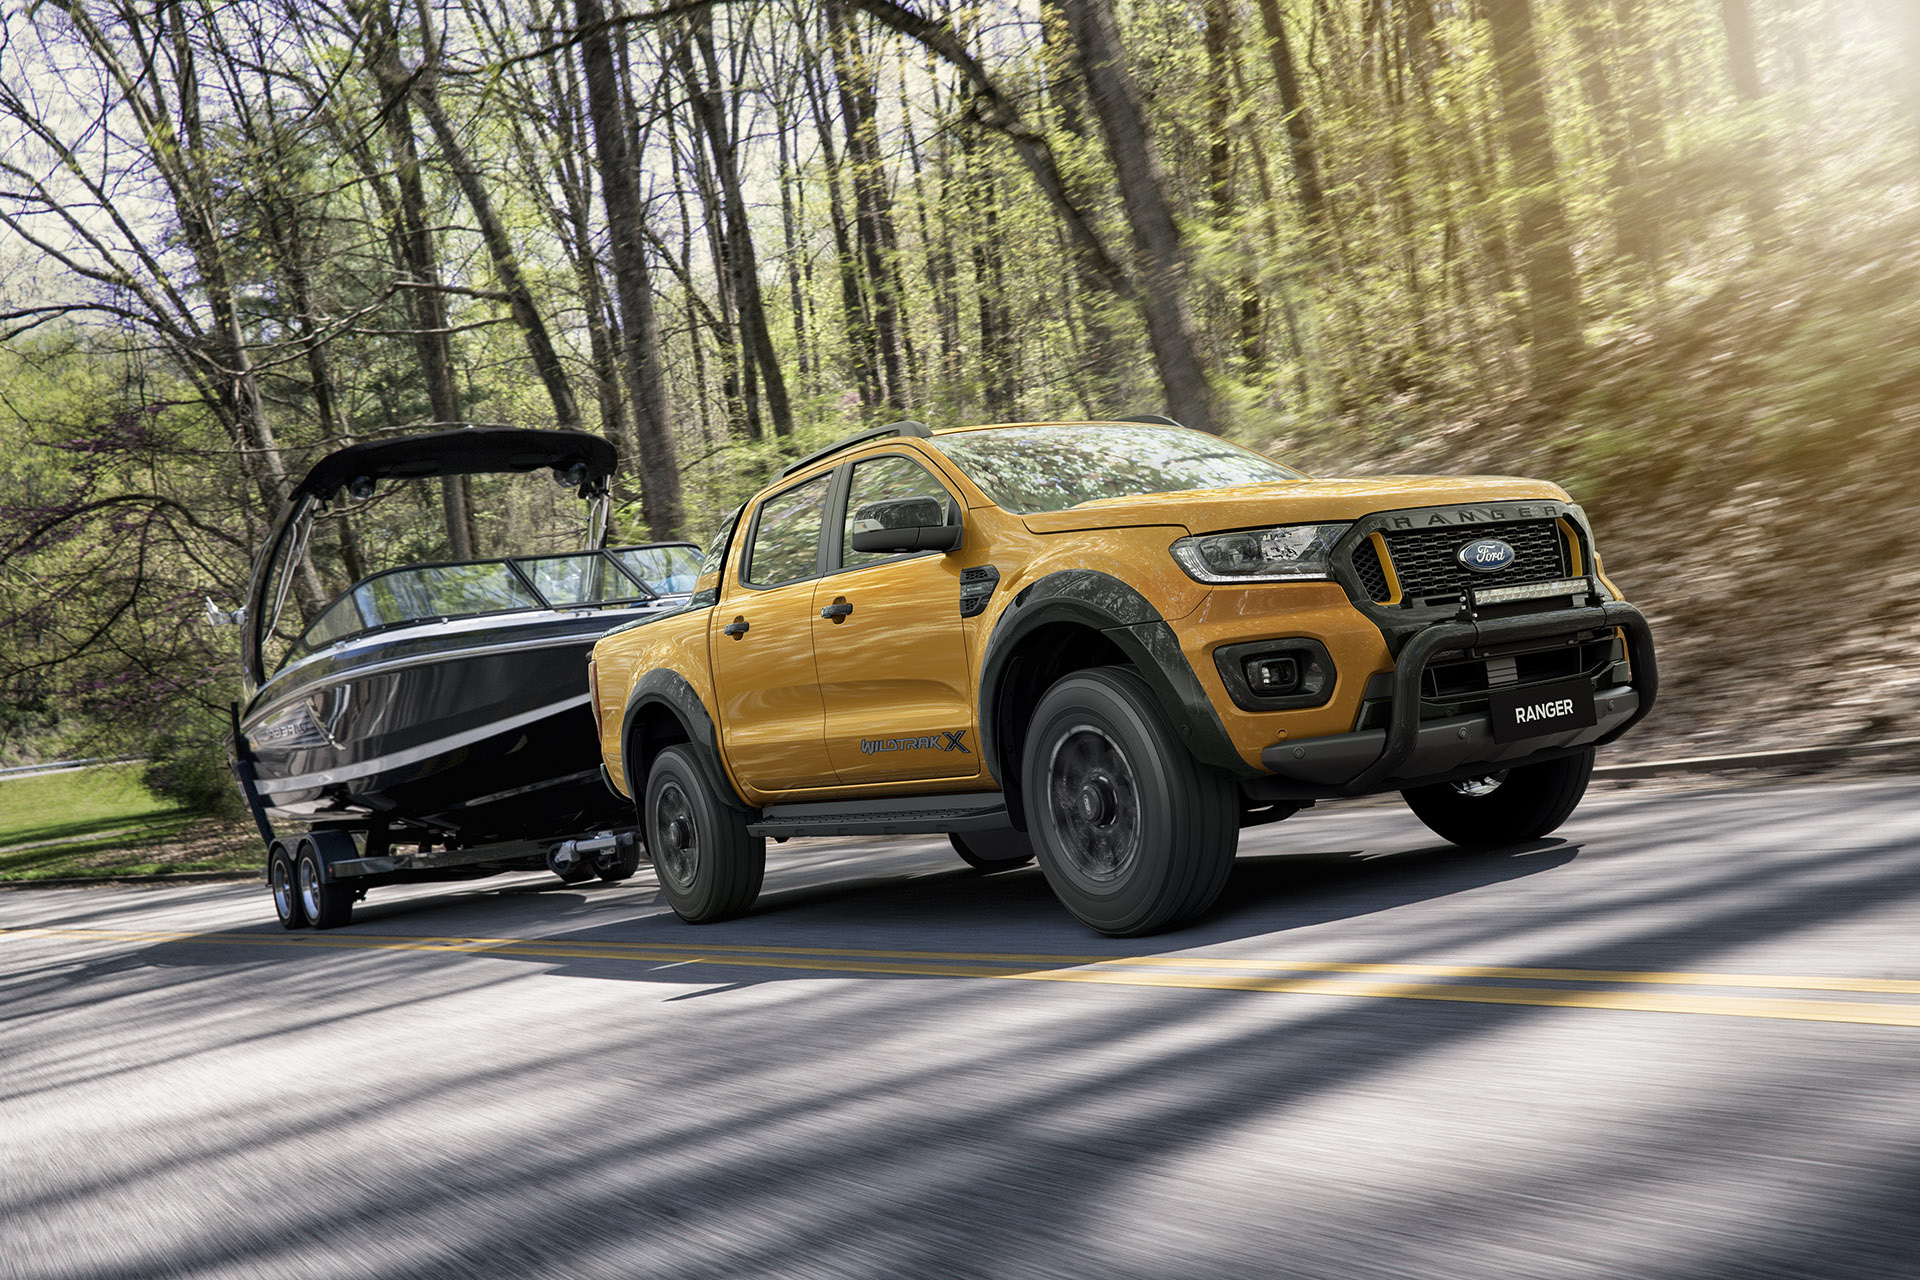 Ford xác nhận sắp có Ranger hybrid - Ảnh 1.